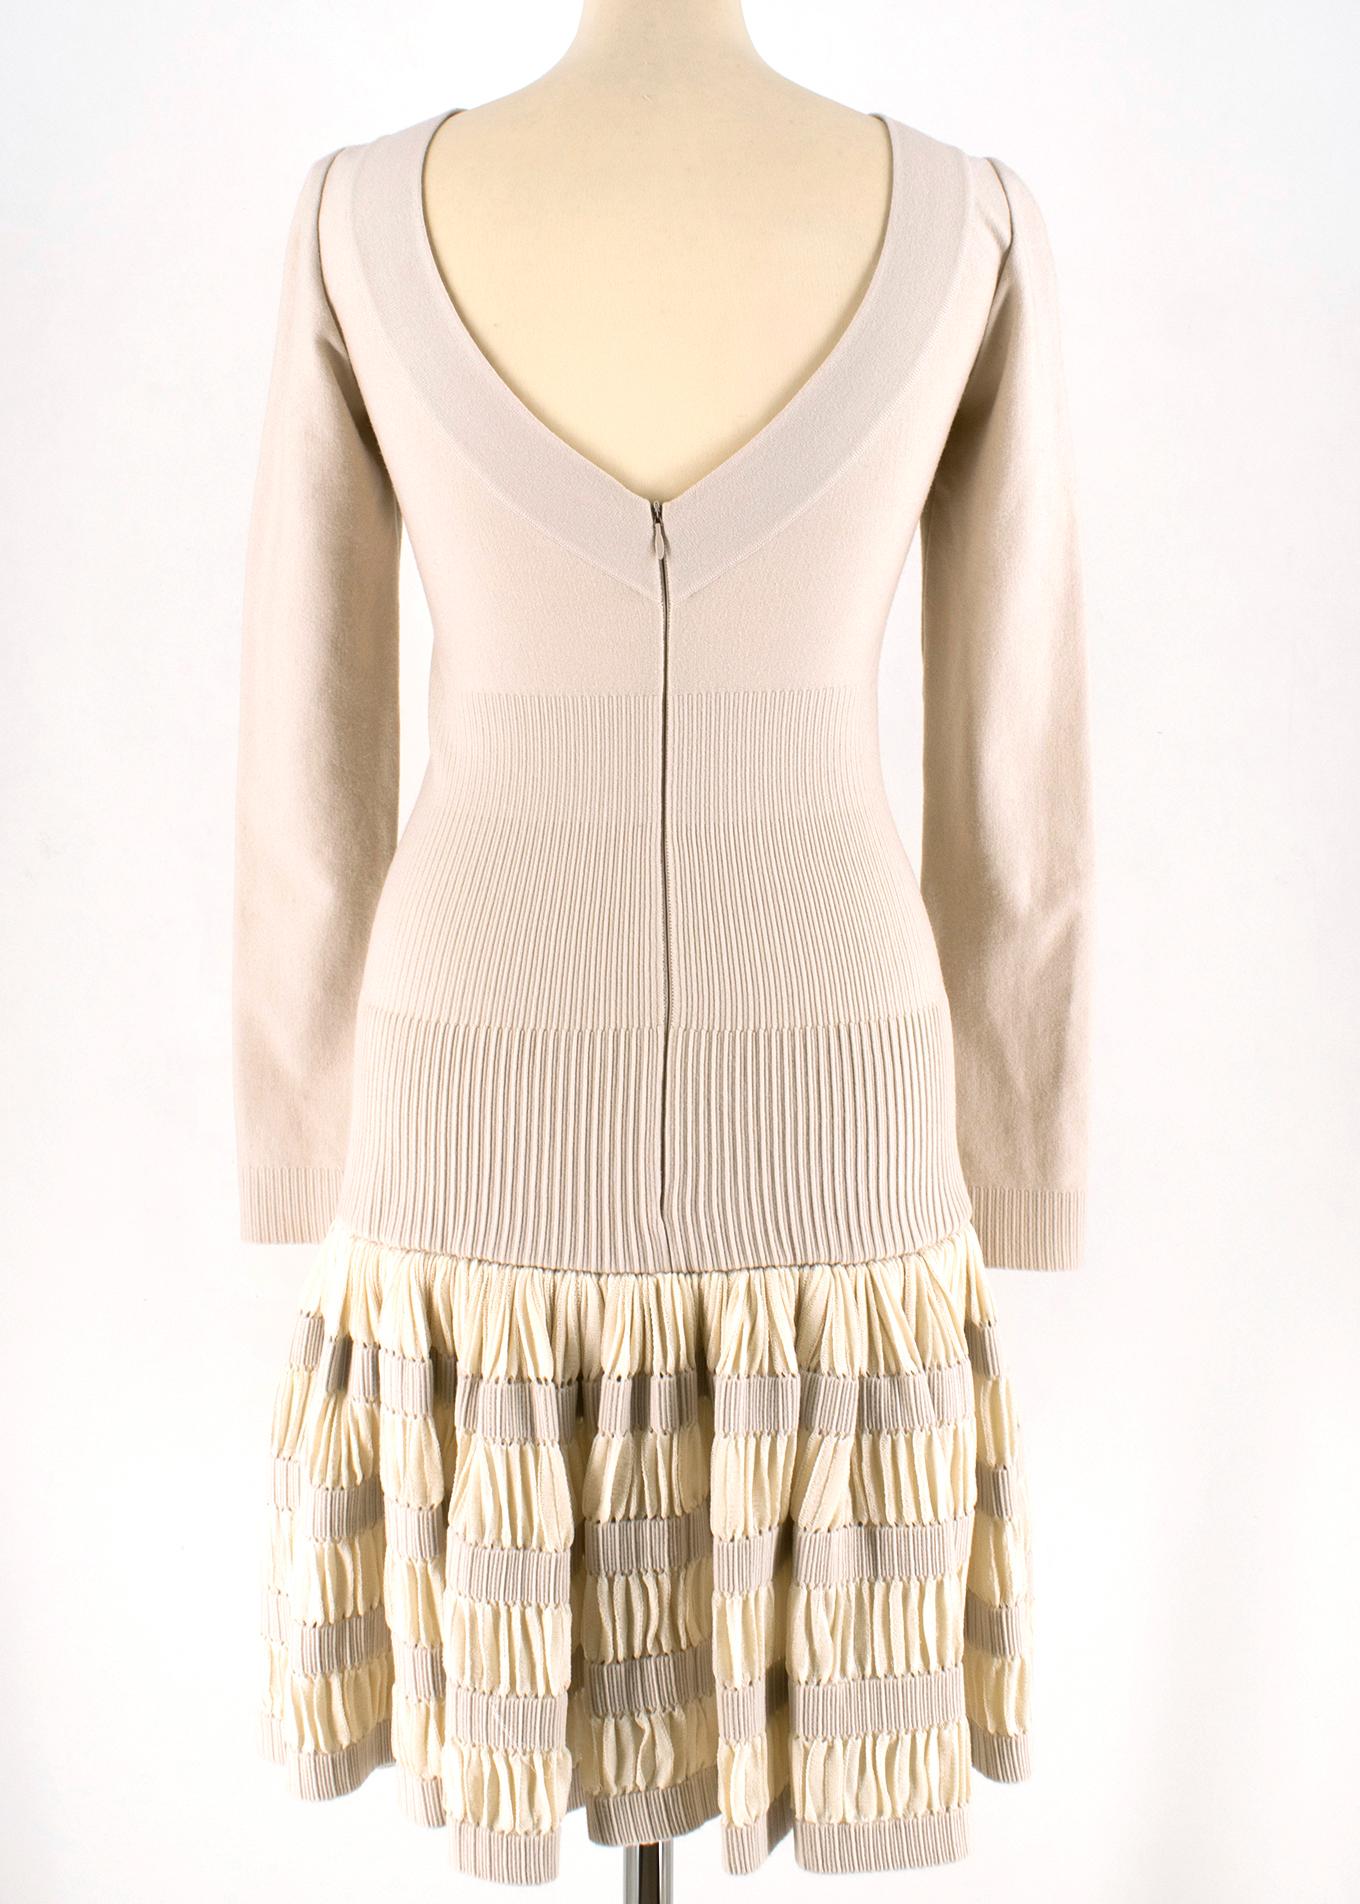 Beige Alaia Ruffle Skirt Wool blend Knit Dress 36 FR